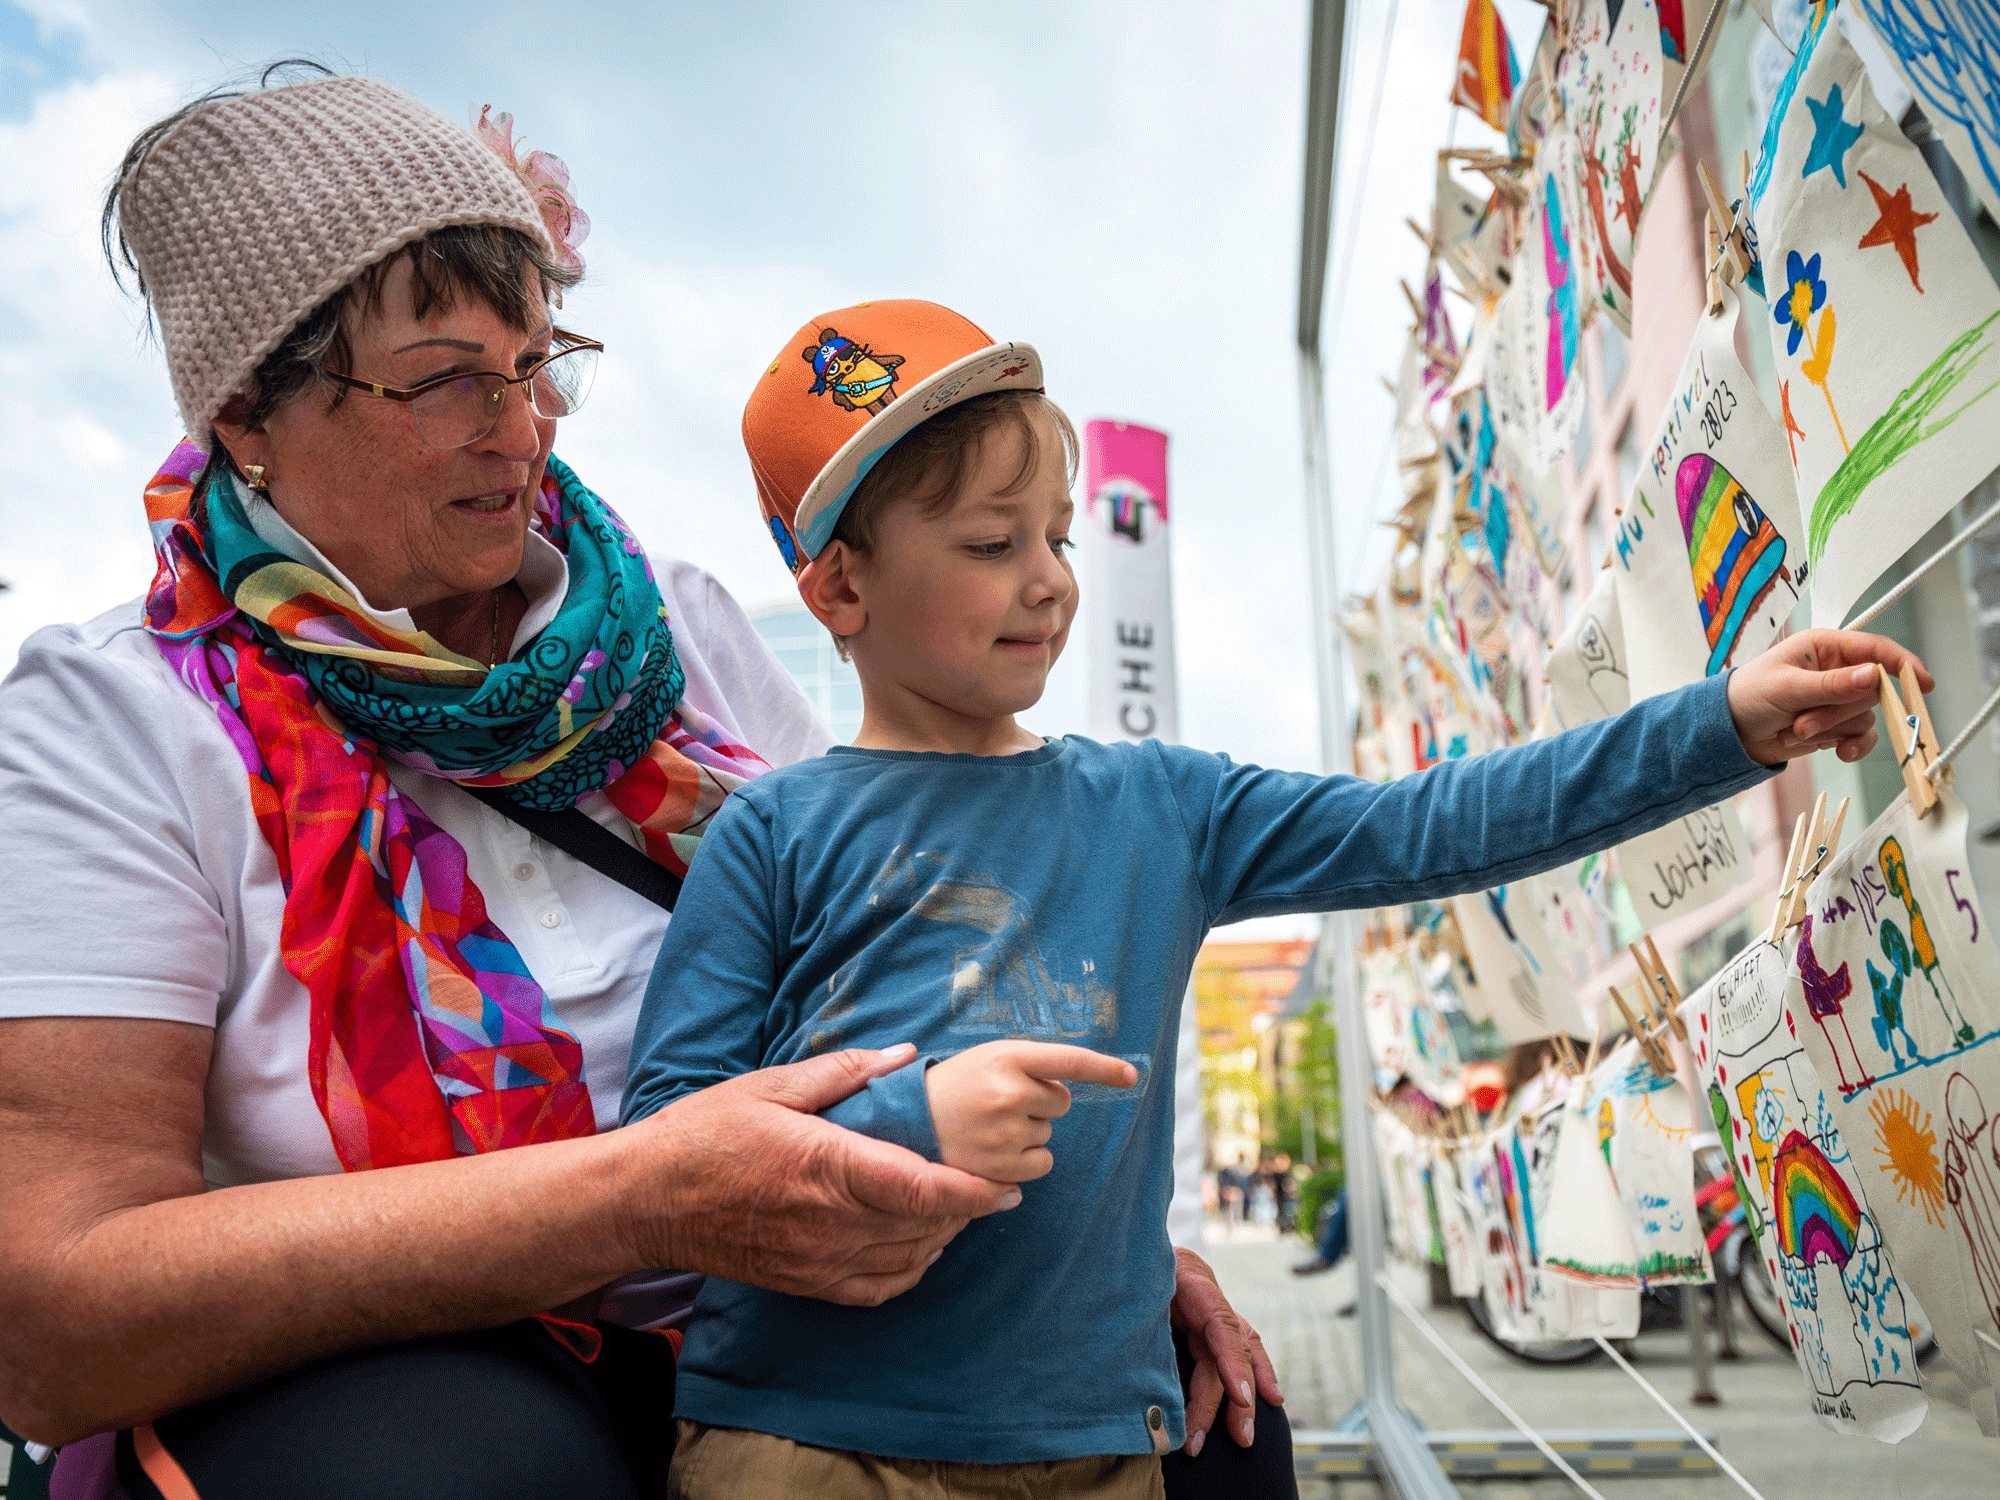 Hutfestival - Das Festival der Straßenkunst in Chemnitz